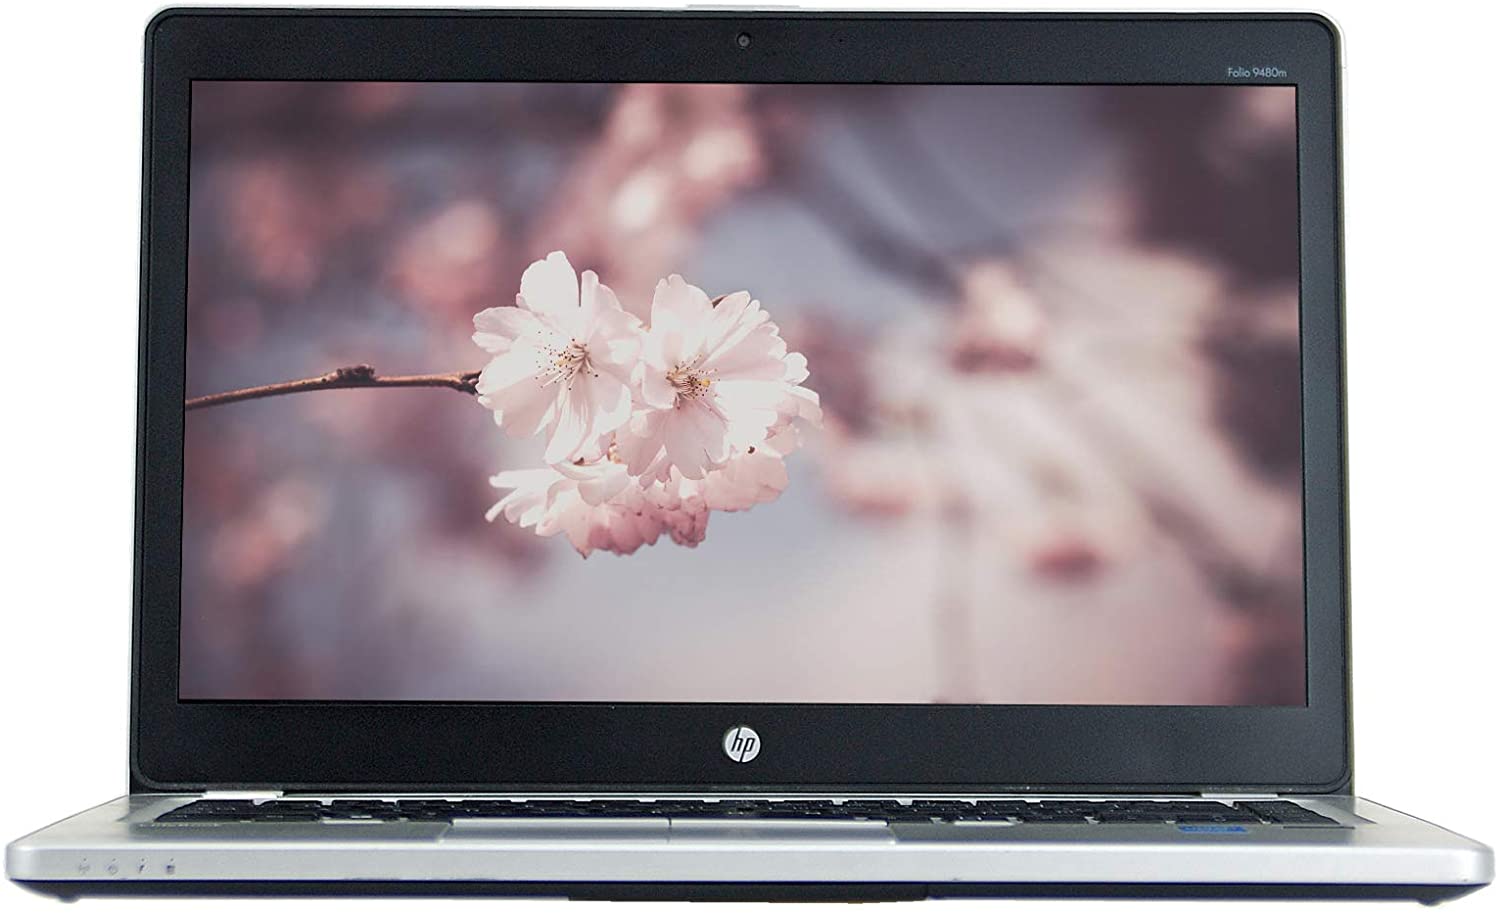 EPower HP EliteBook Folio 9480M 14 Inches Windows 10 Pro 64bit 4th Gen Laptop (Renewed)